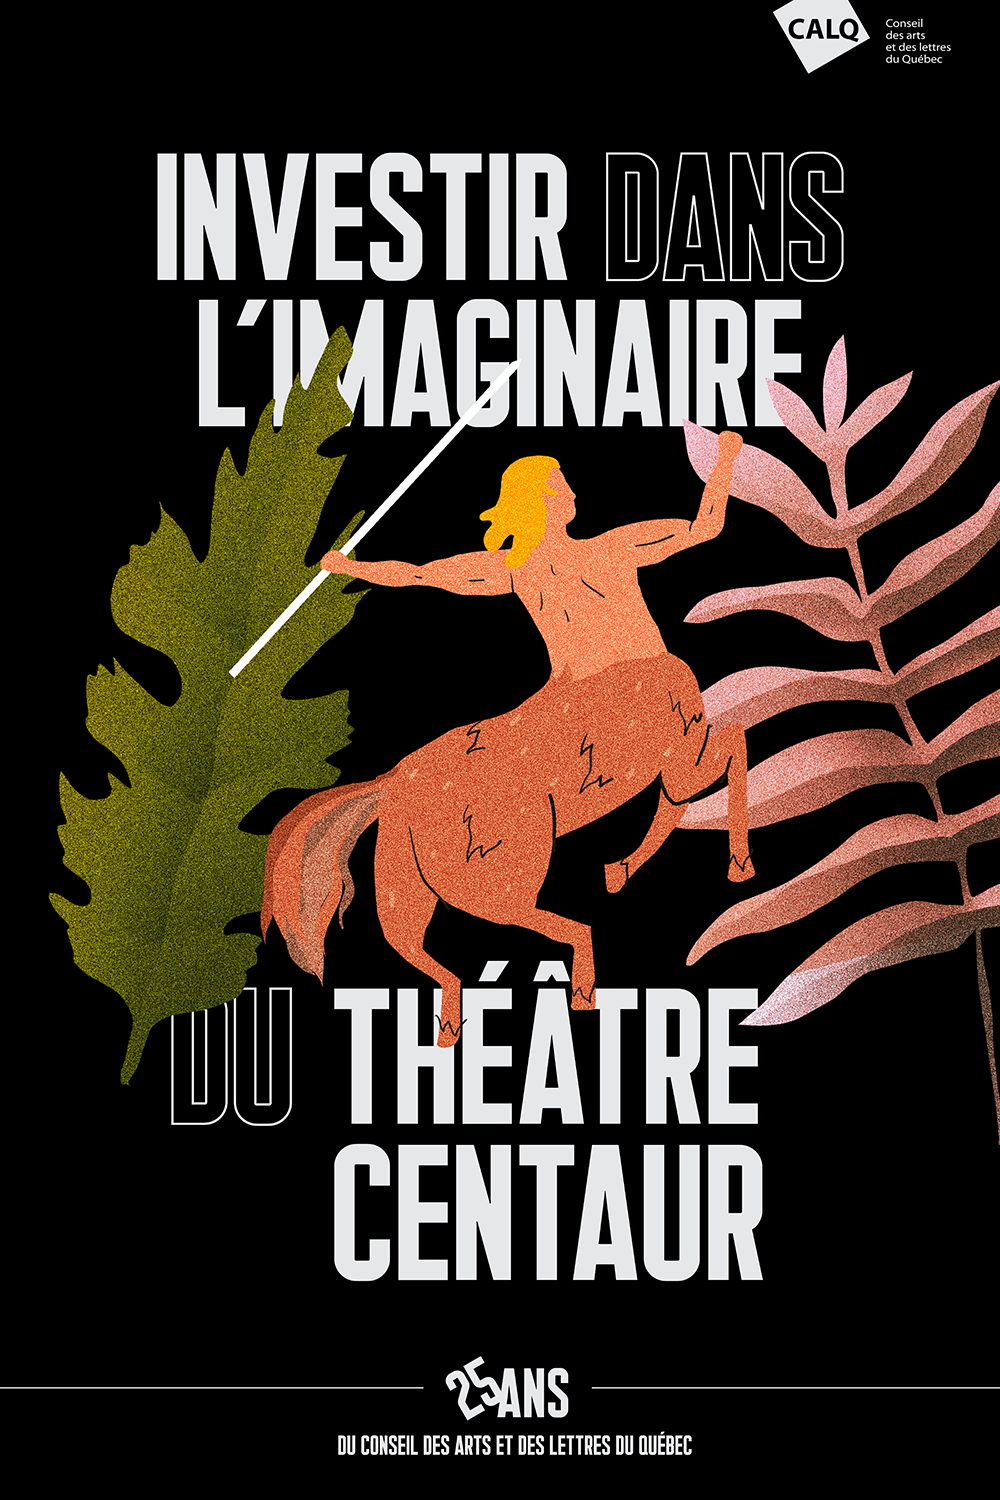 Investir dans l'imaginaire du Théâtre Centaur